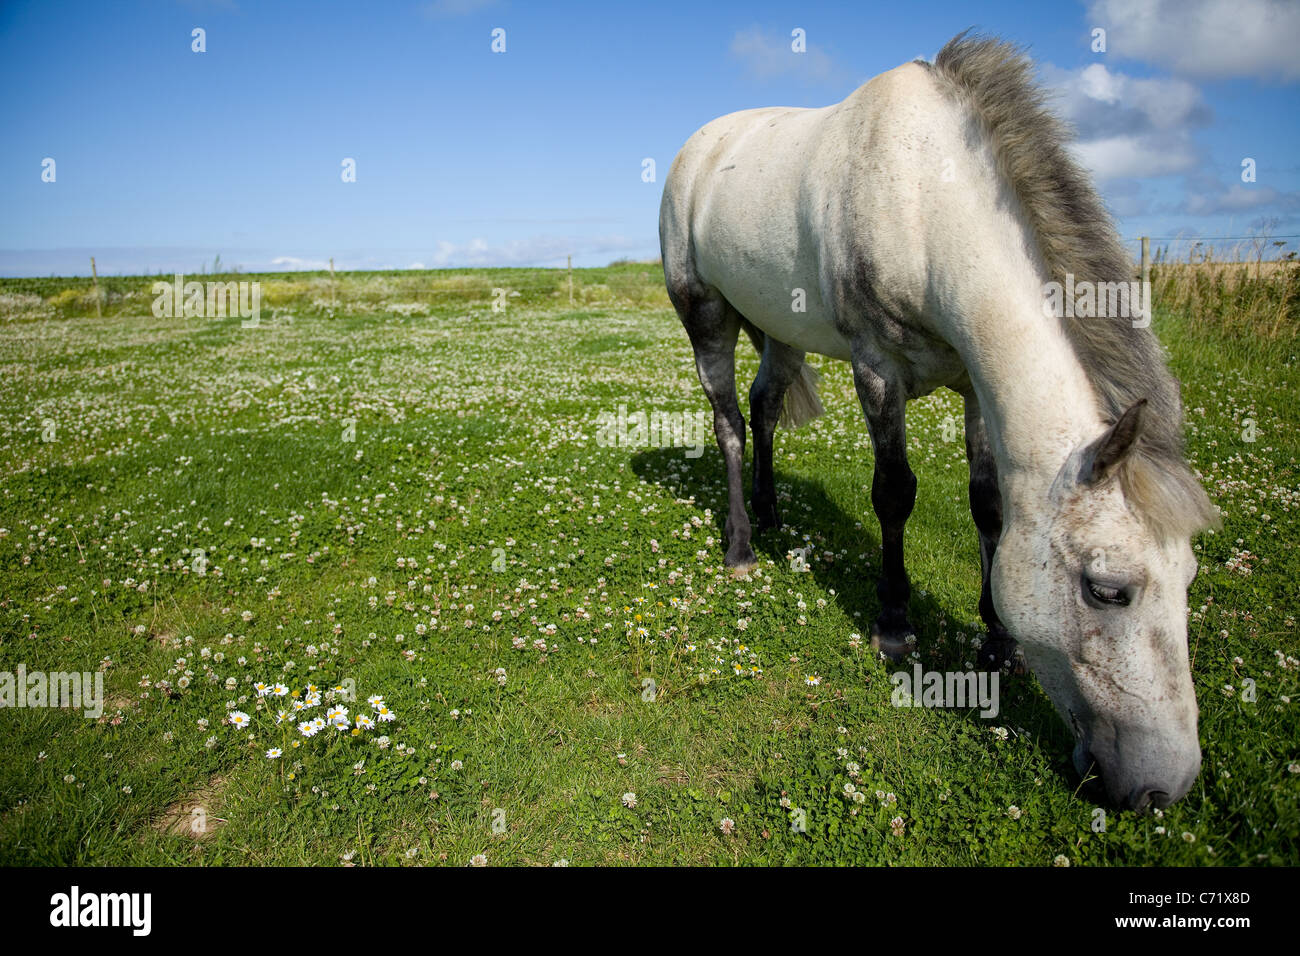 Gris pommelé Connemara Pony vu ici le pâturage sur l'herbe luxuriante à Norfolk UK. Ciel bleu ensoleillé et des images nettes. Banque D'Images